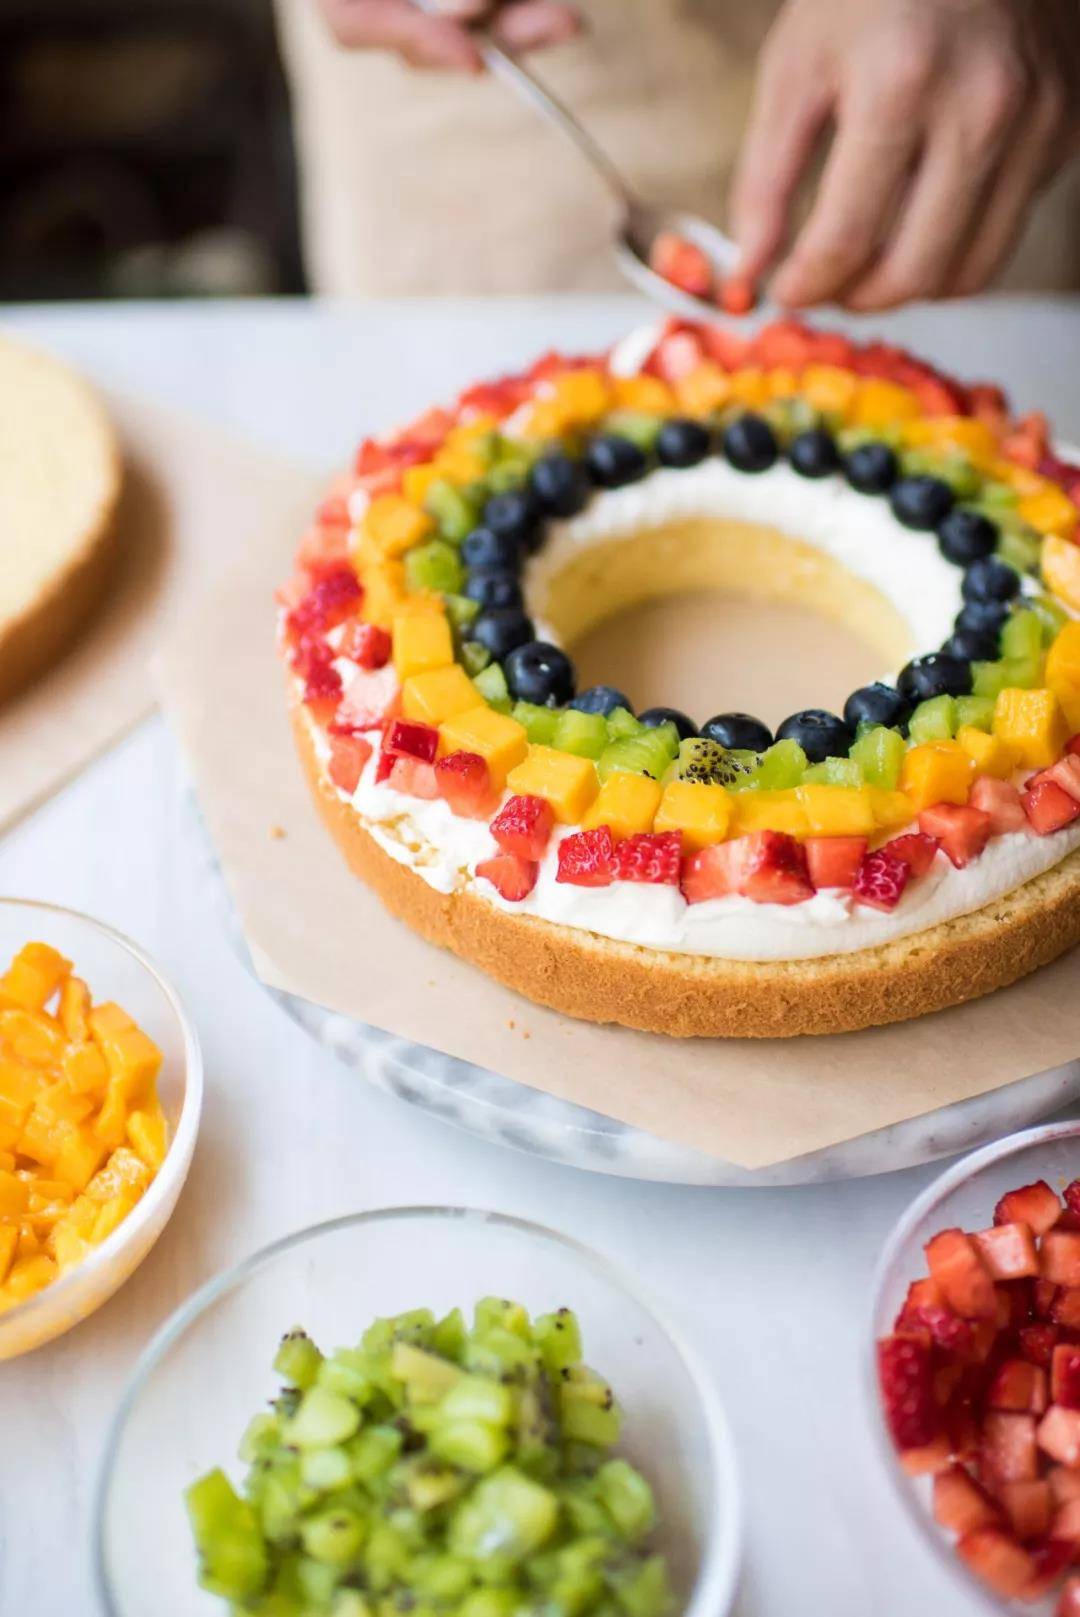 彩虹裸蛋糕的做法_【图解】彩虹裸蛋糕怎么做如何做好吃_彩虹裸蛋糕家常做法大全_常玲儿_豆果美食